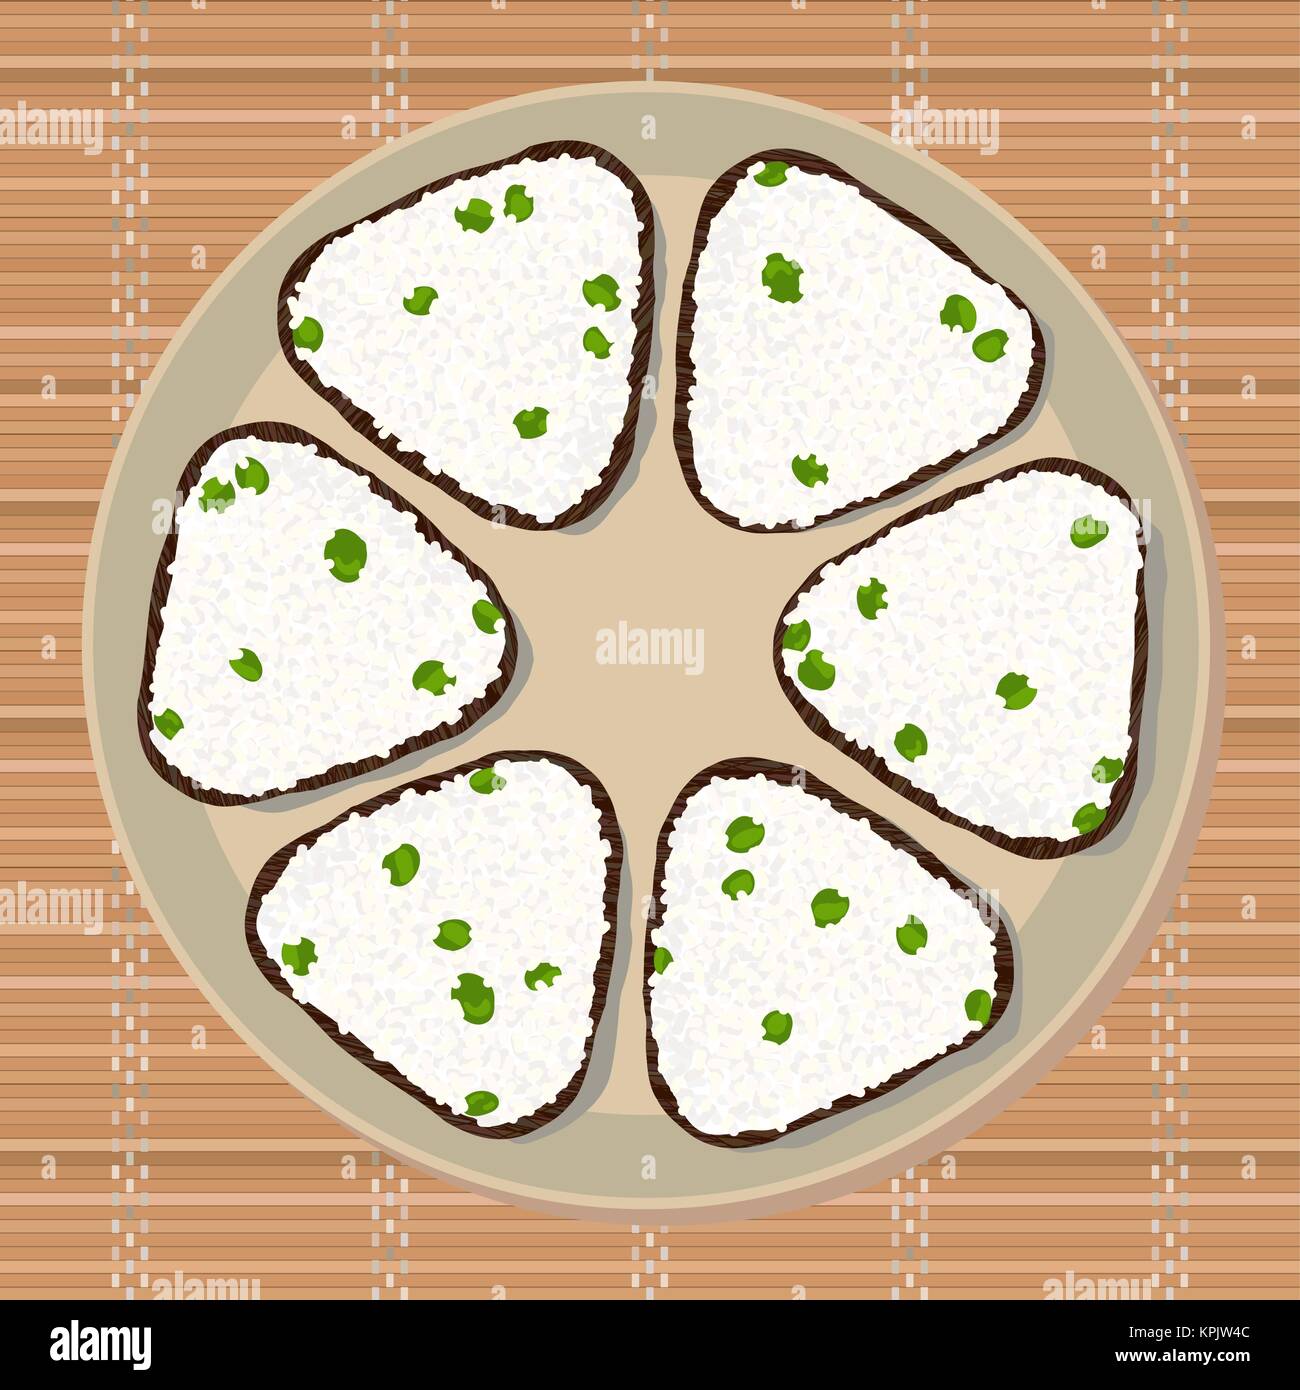 Onigiri mit grünen Erbsen. Dreieck Reisbällchen aufgewickelt mit Nori Algen. Abbildung. Japanische Küche. Mittagessen Textur. Asiatische snack Plate auf dem japane Stock Vektor